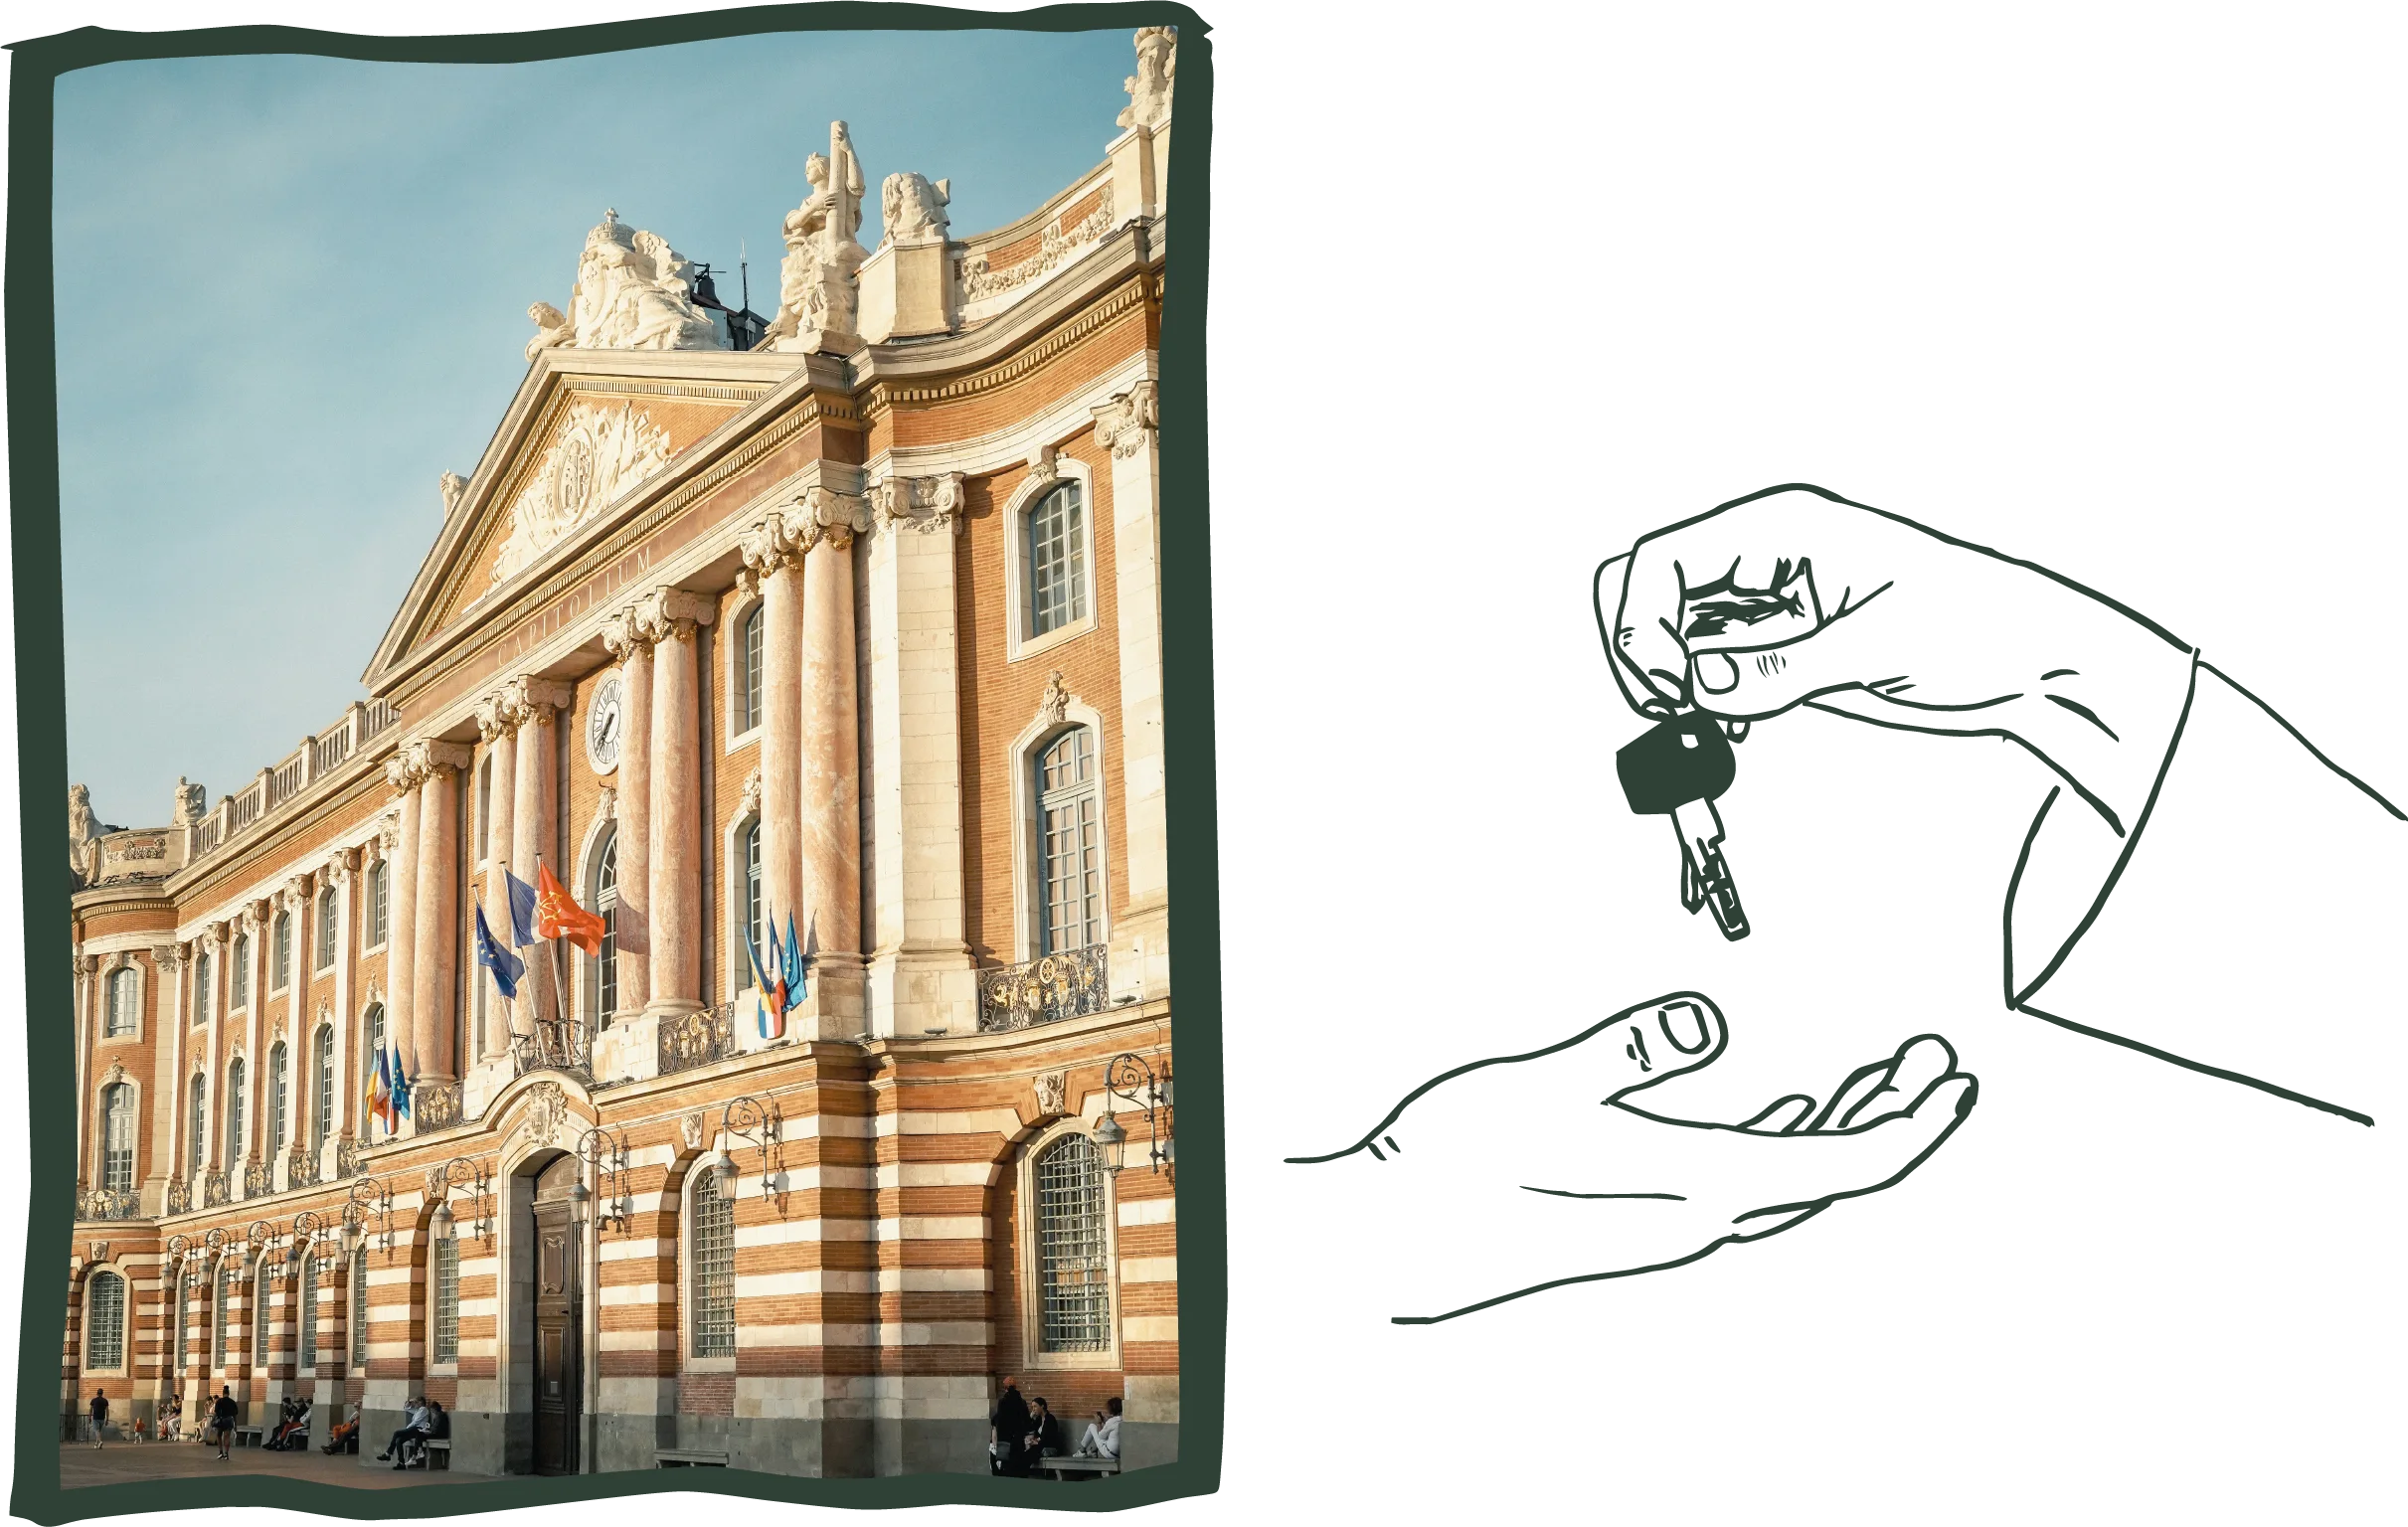 Sur la gauche une photo de la façade du capitole à toulouse. Sur la droite un dessin vert fonçé d'un échange de clés entre deux mains.